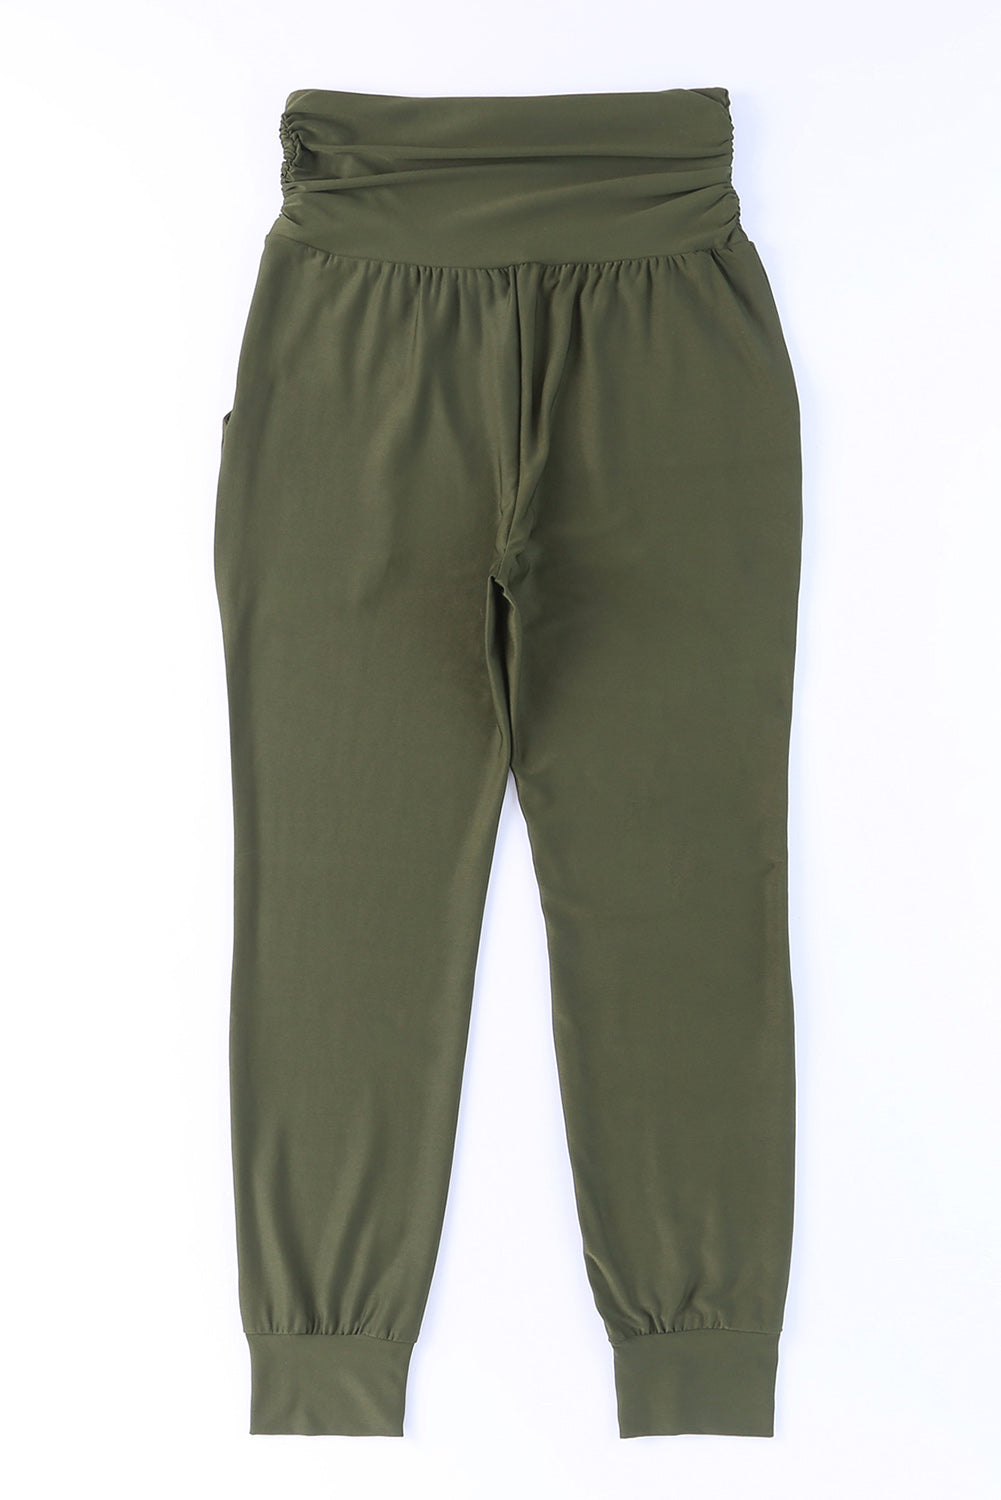 Grüne Leggings mit hoher Taille und plissierten Taschen